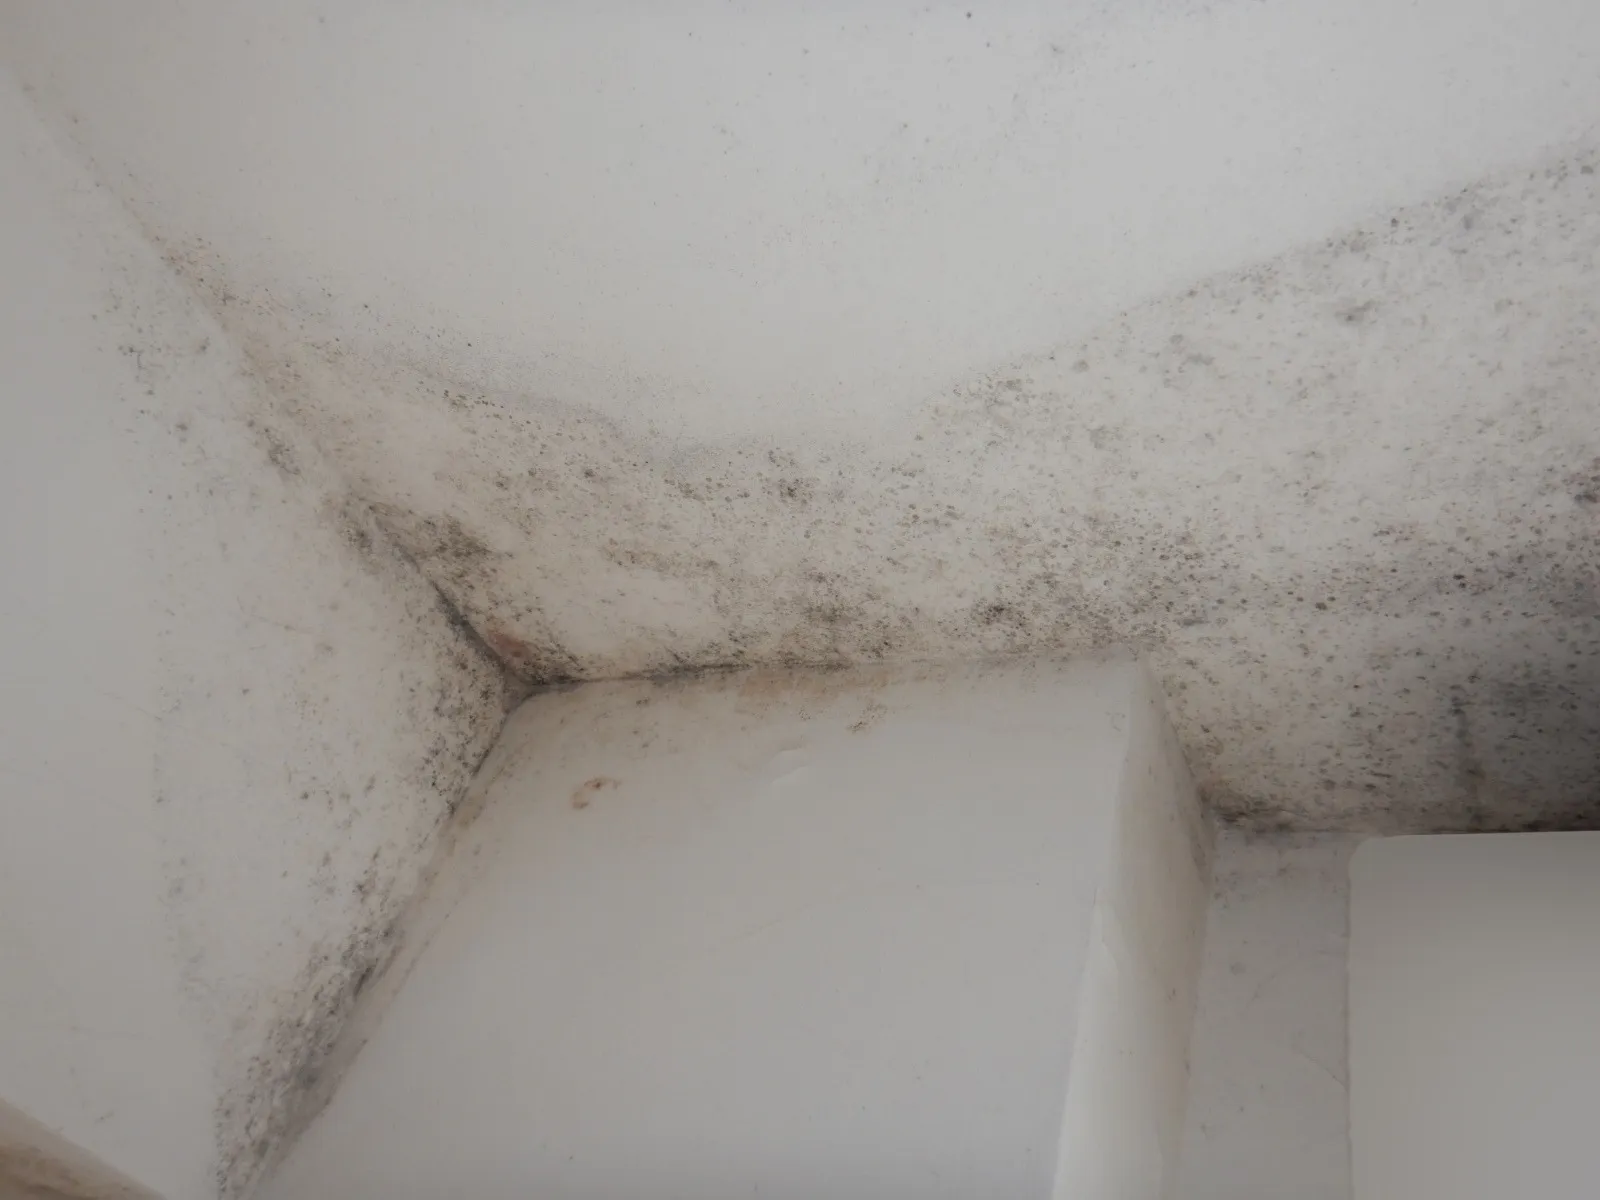 【天井コンクリート下地】壁紙に珪藻土を塗っても結露カビは止まらない